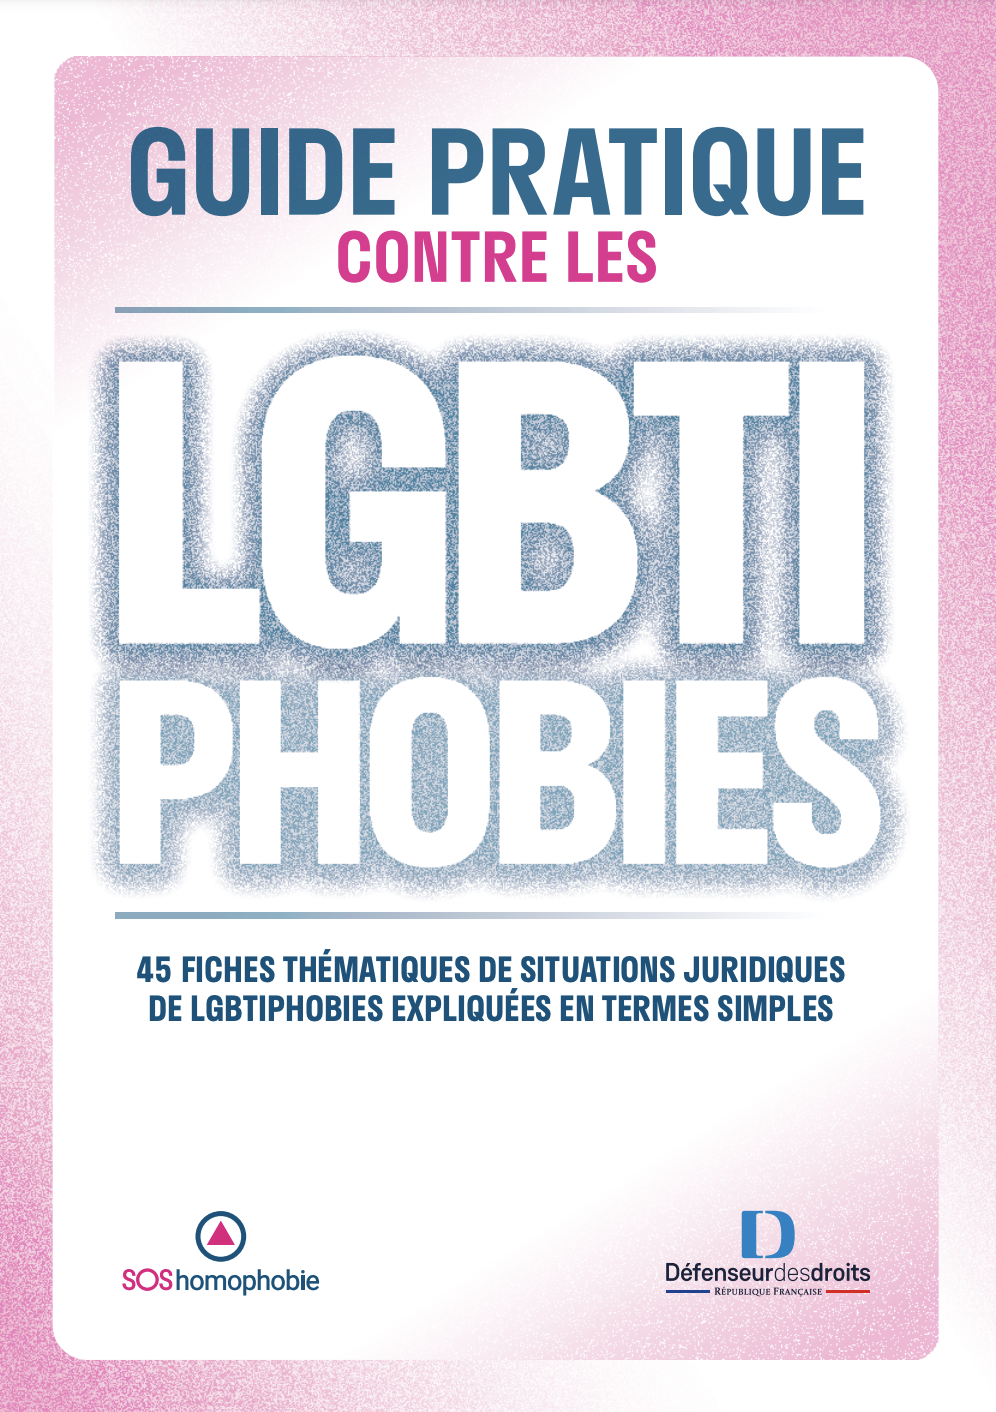 Guide pratique contre les LGBTphobies